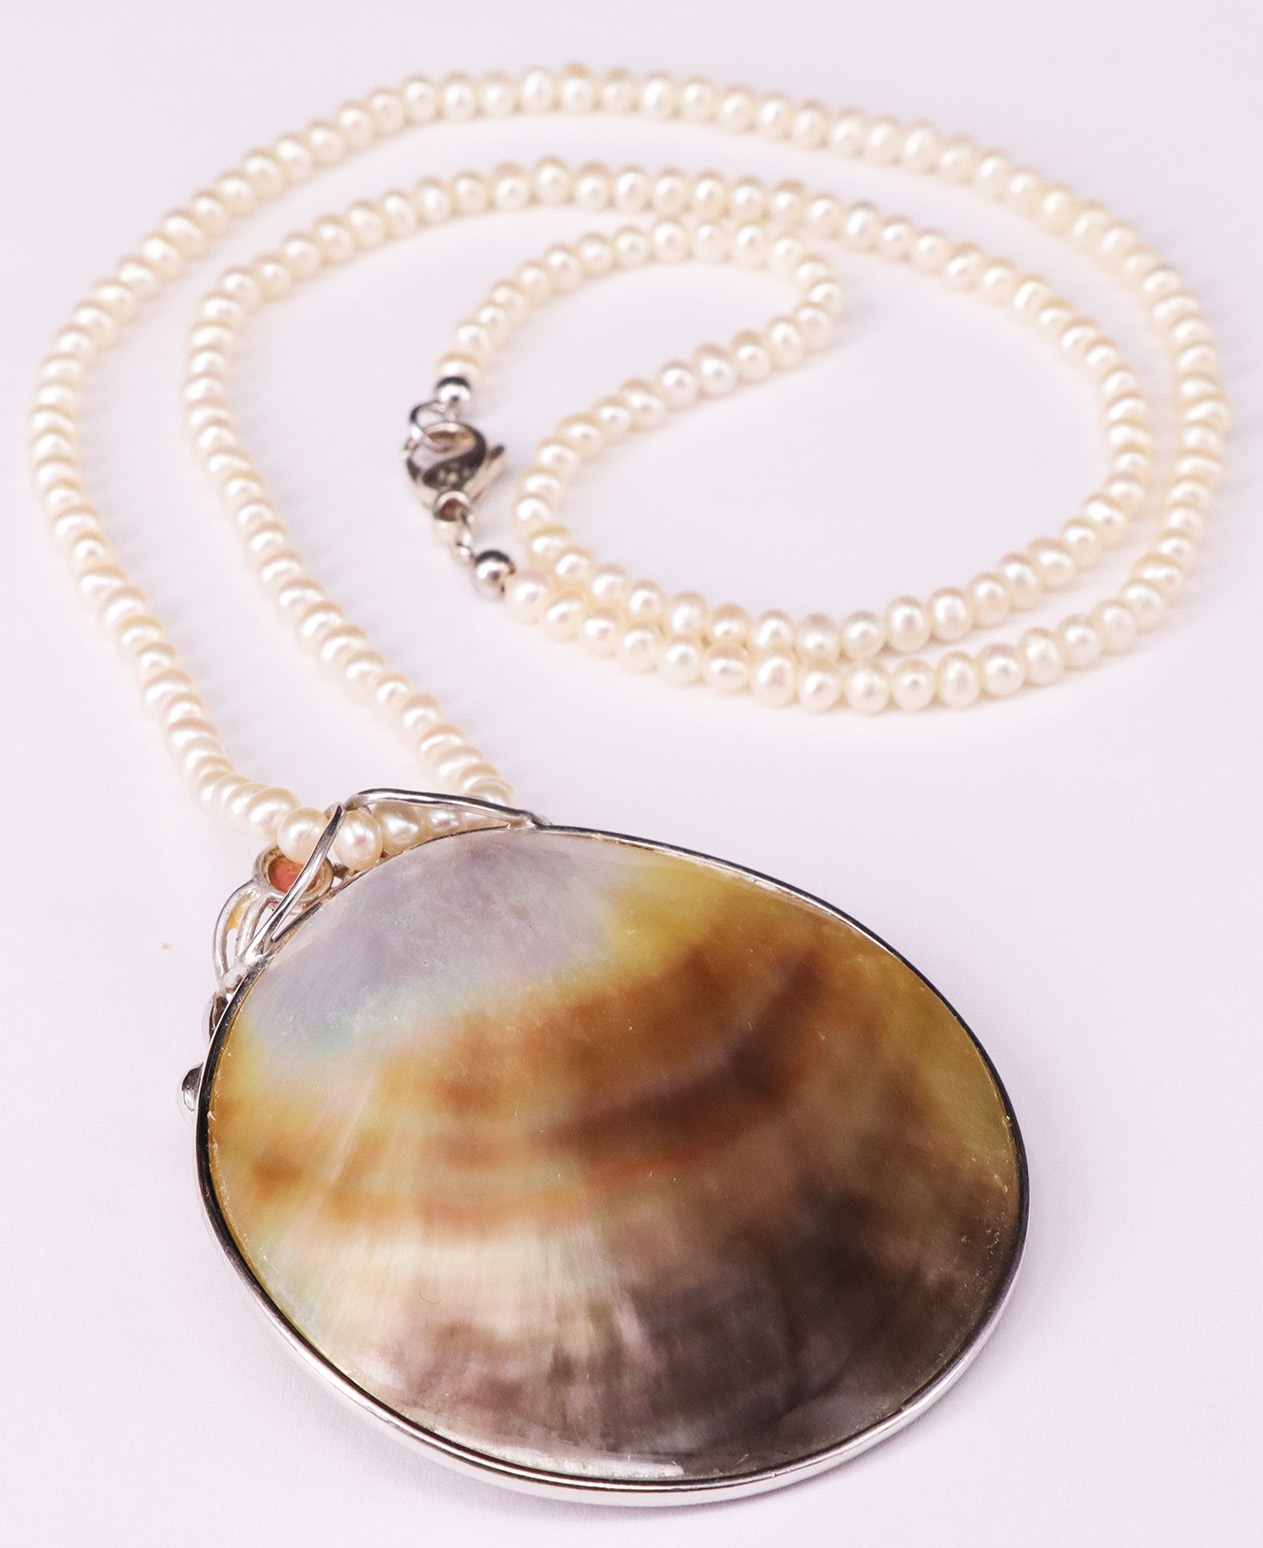 Kette aus Süßwasserperlen und Anhänger aus Muschel / Freshwater pearl necklace and shell pendant. - Image 2 of 2